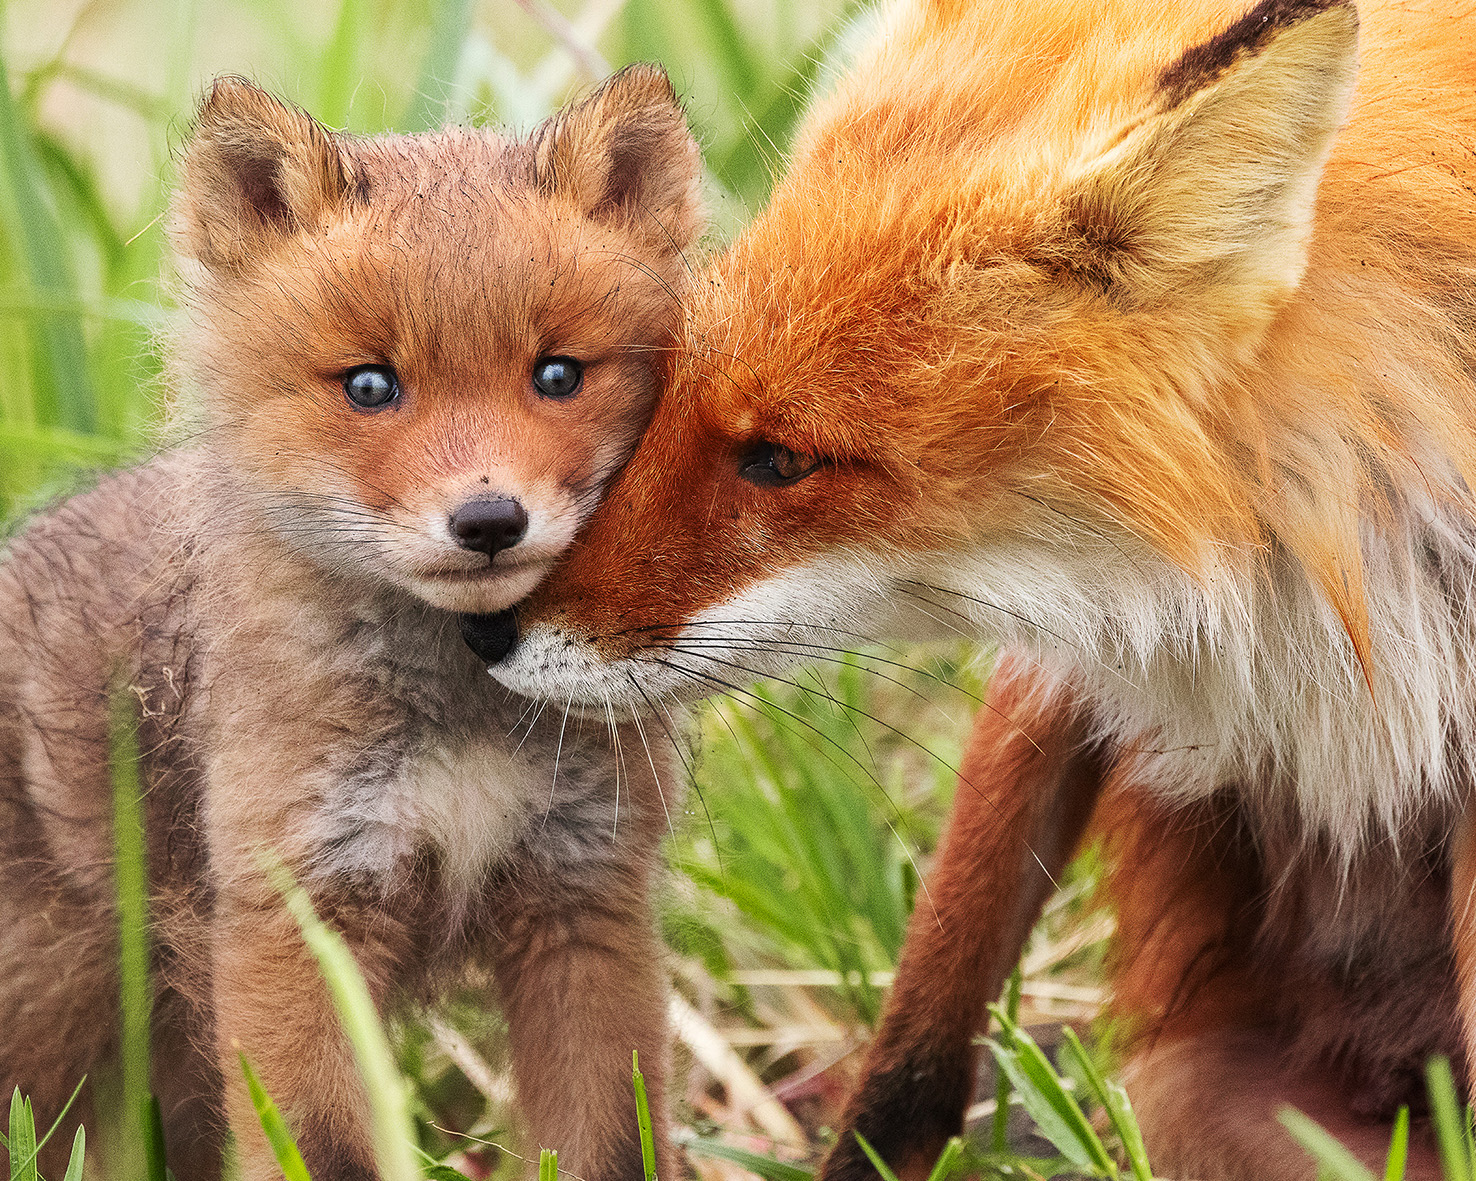 Take fox